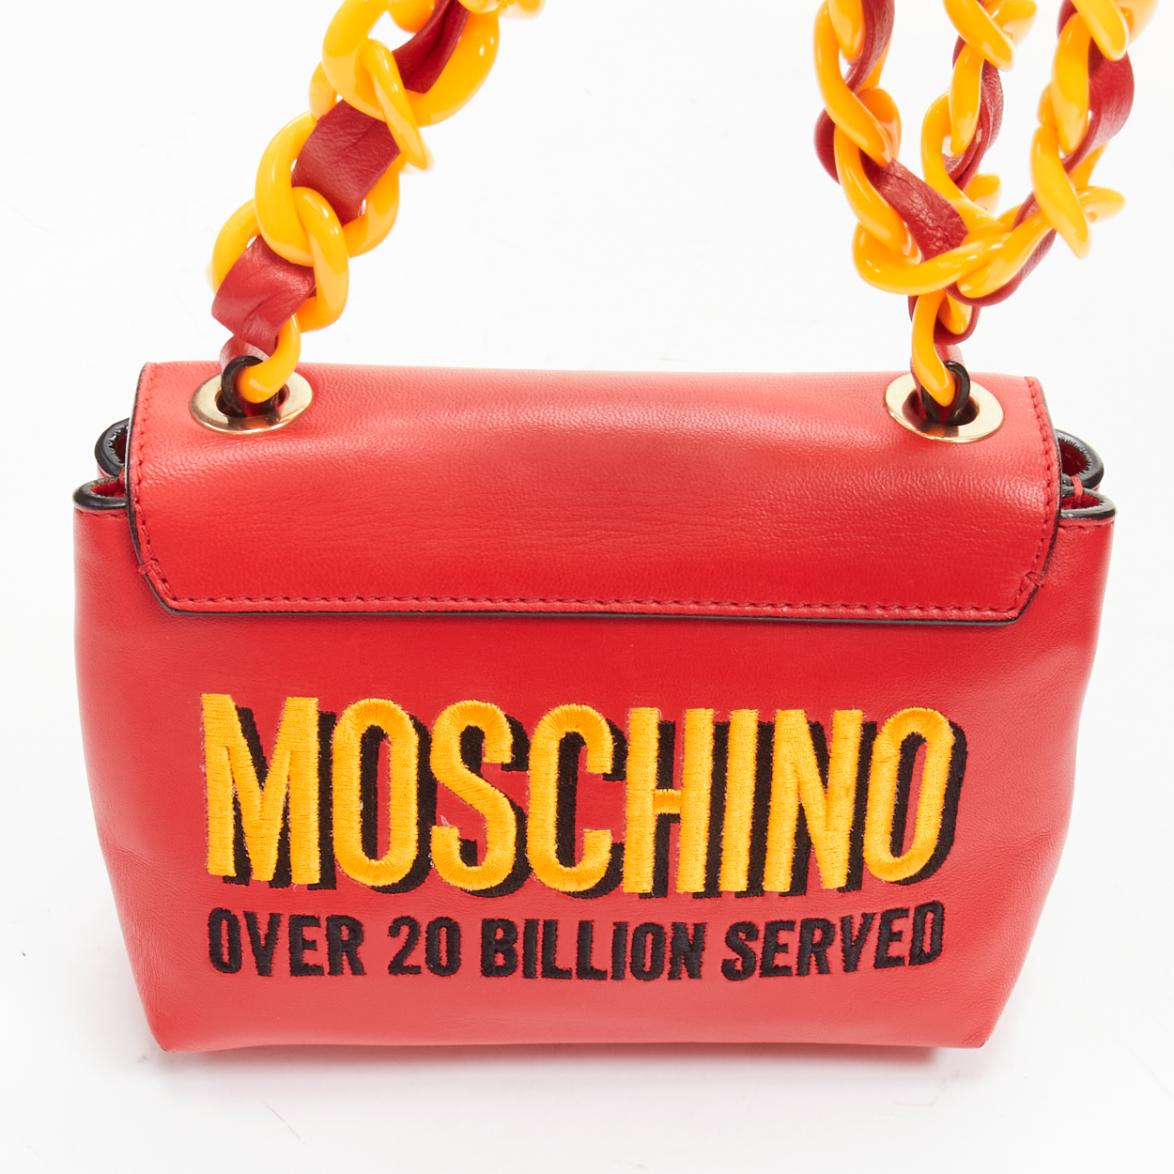 MOSCHINO Jeremy Scott 2014 Crossbody aus rot-gelber Kunststoffkette  Tasche 2